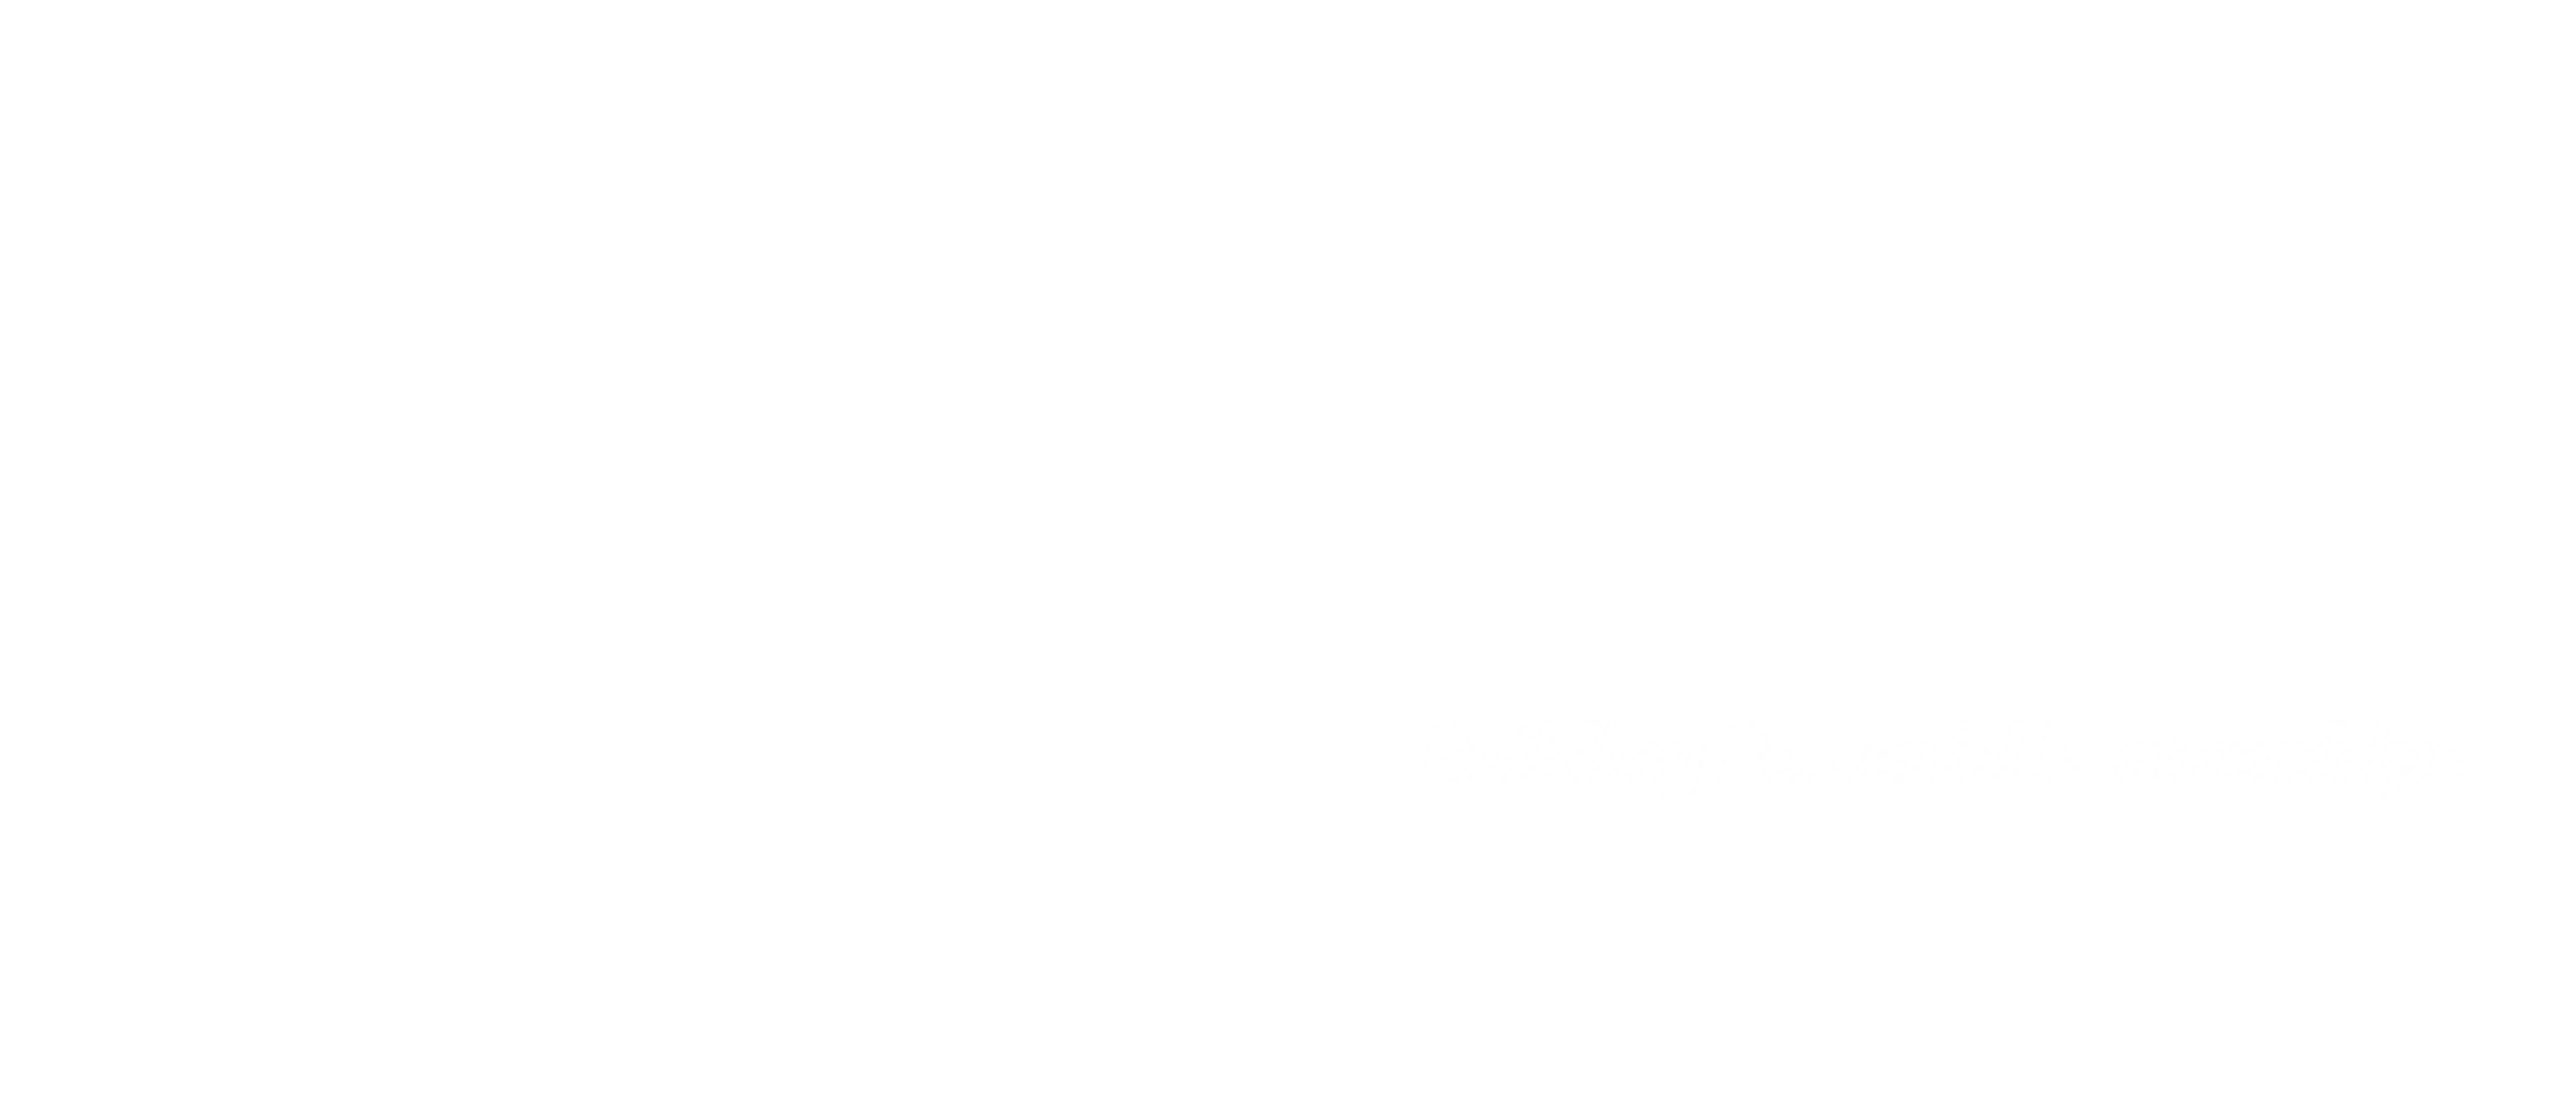 UPDATED_Monrealit logo white_5640 x 2432